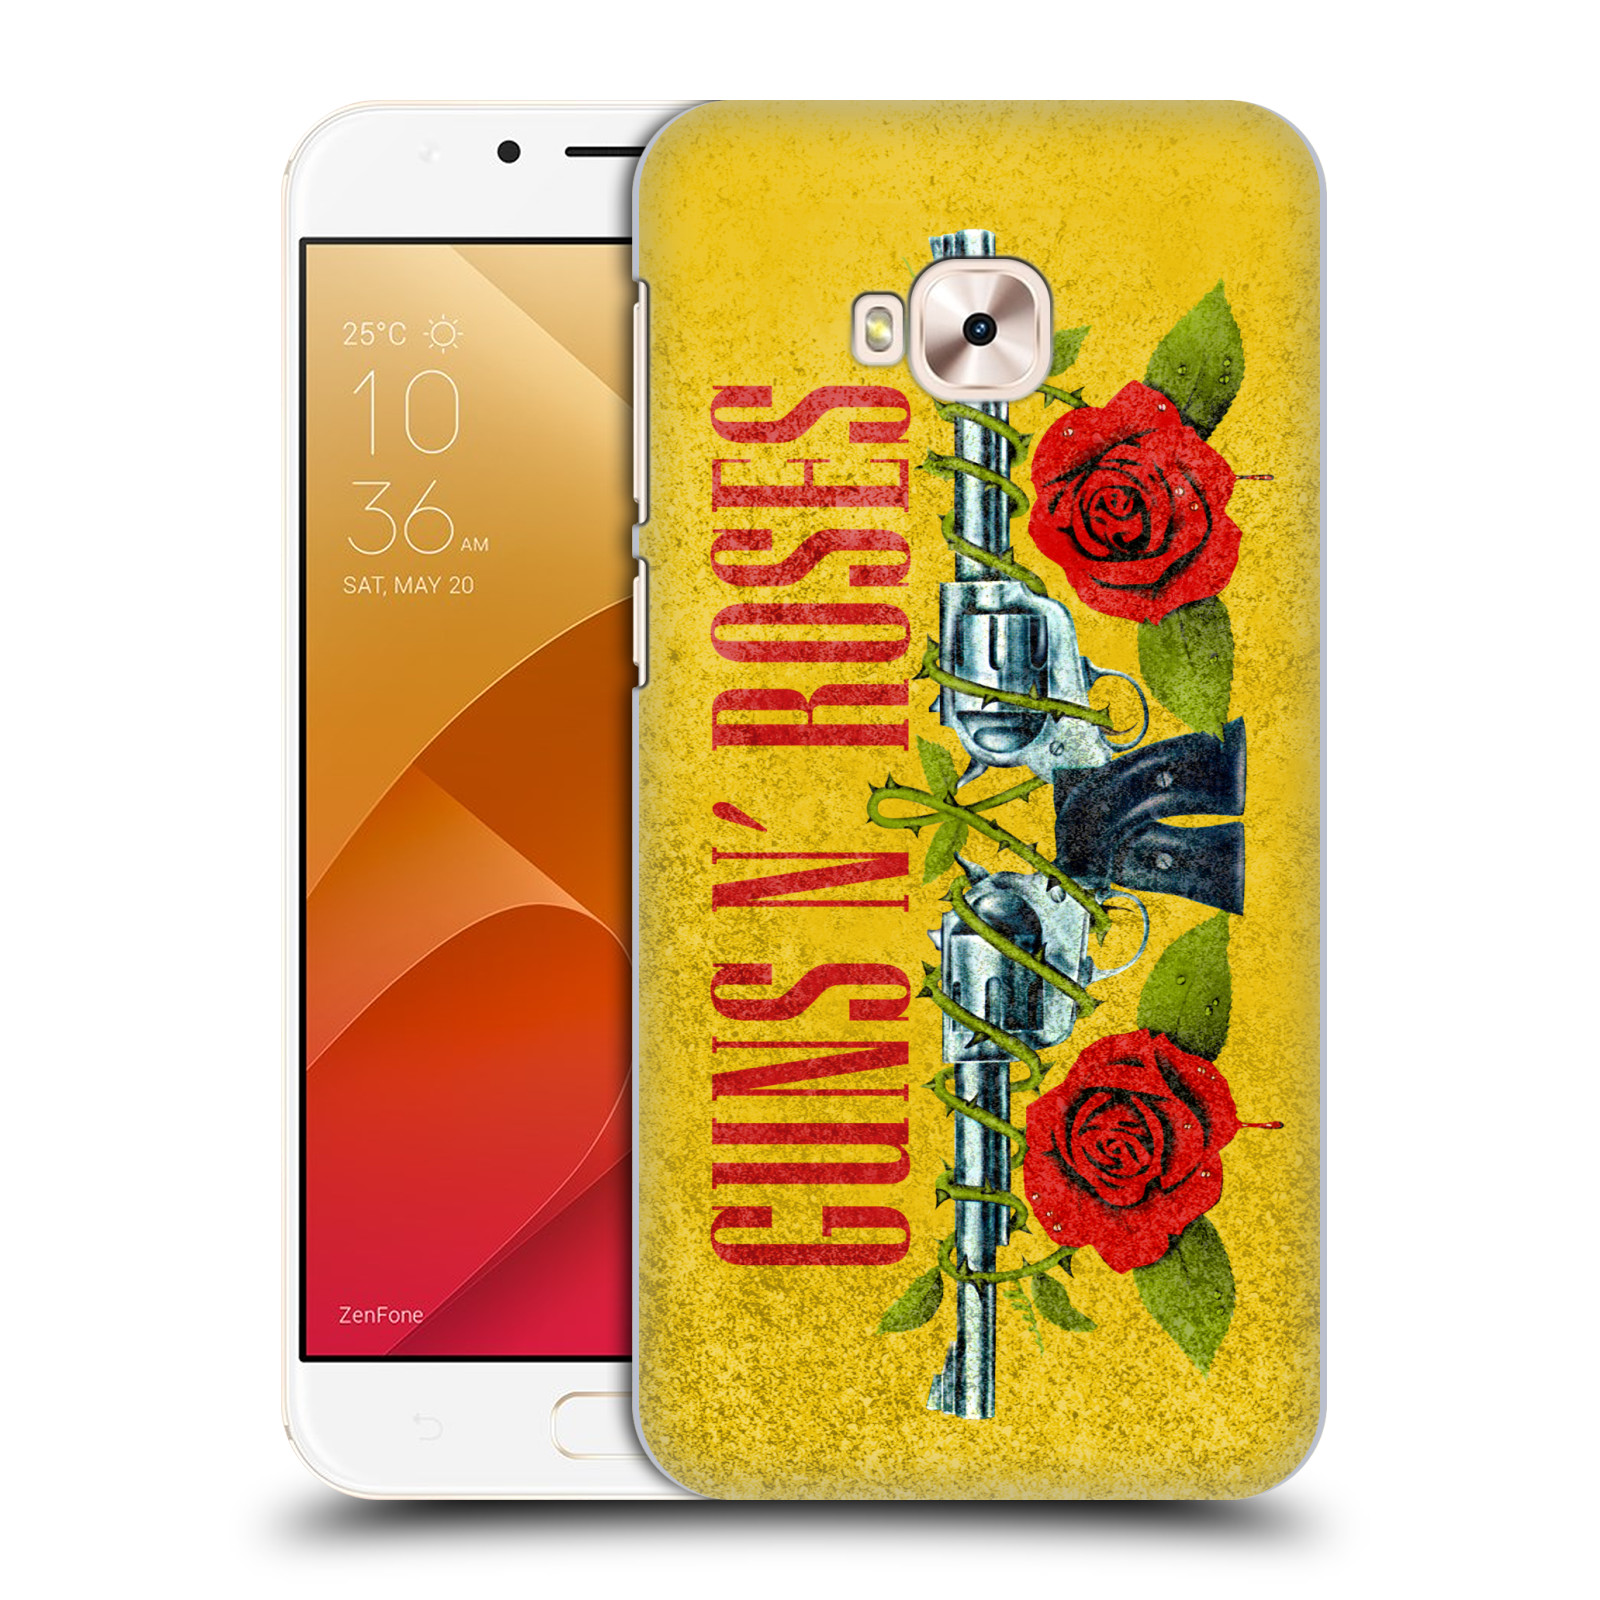 HEAD CASE plastový obal na mobil Asus Zenfone 4 Selfie Pro ZD552KL hudební skupina Guns N Roses pistole a růže žluté pozadí